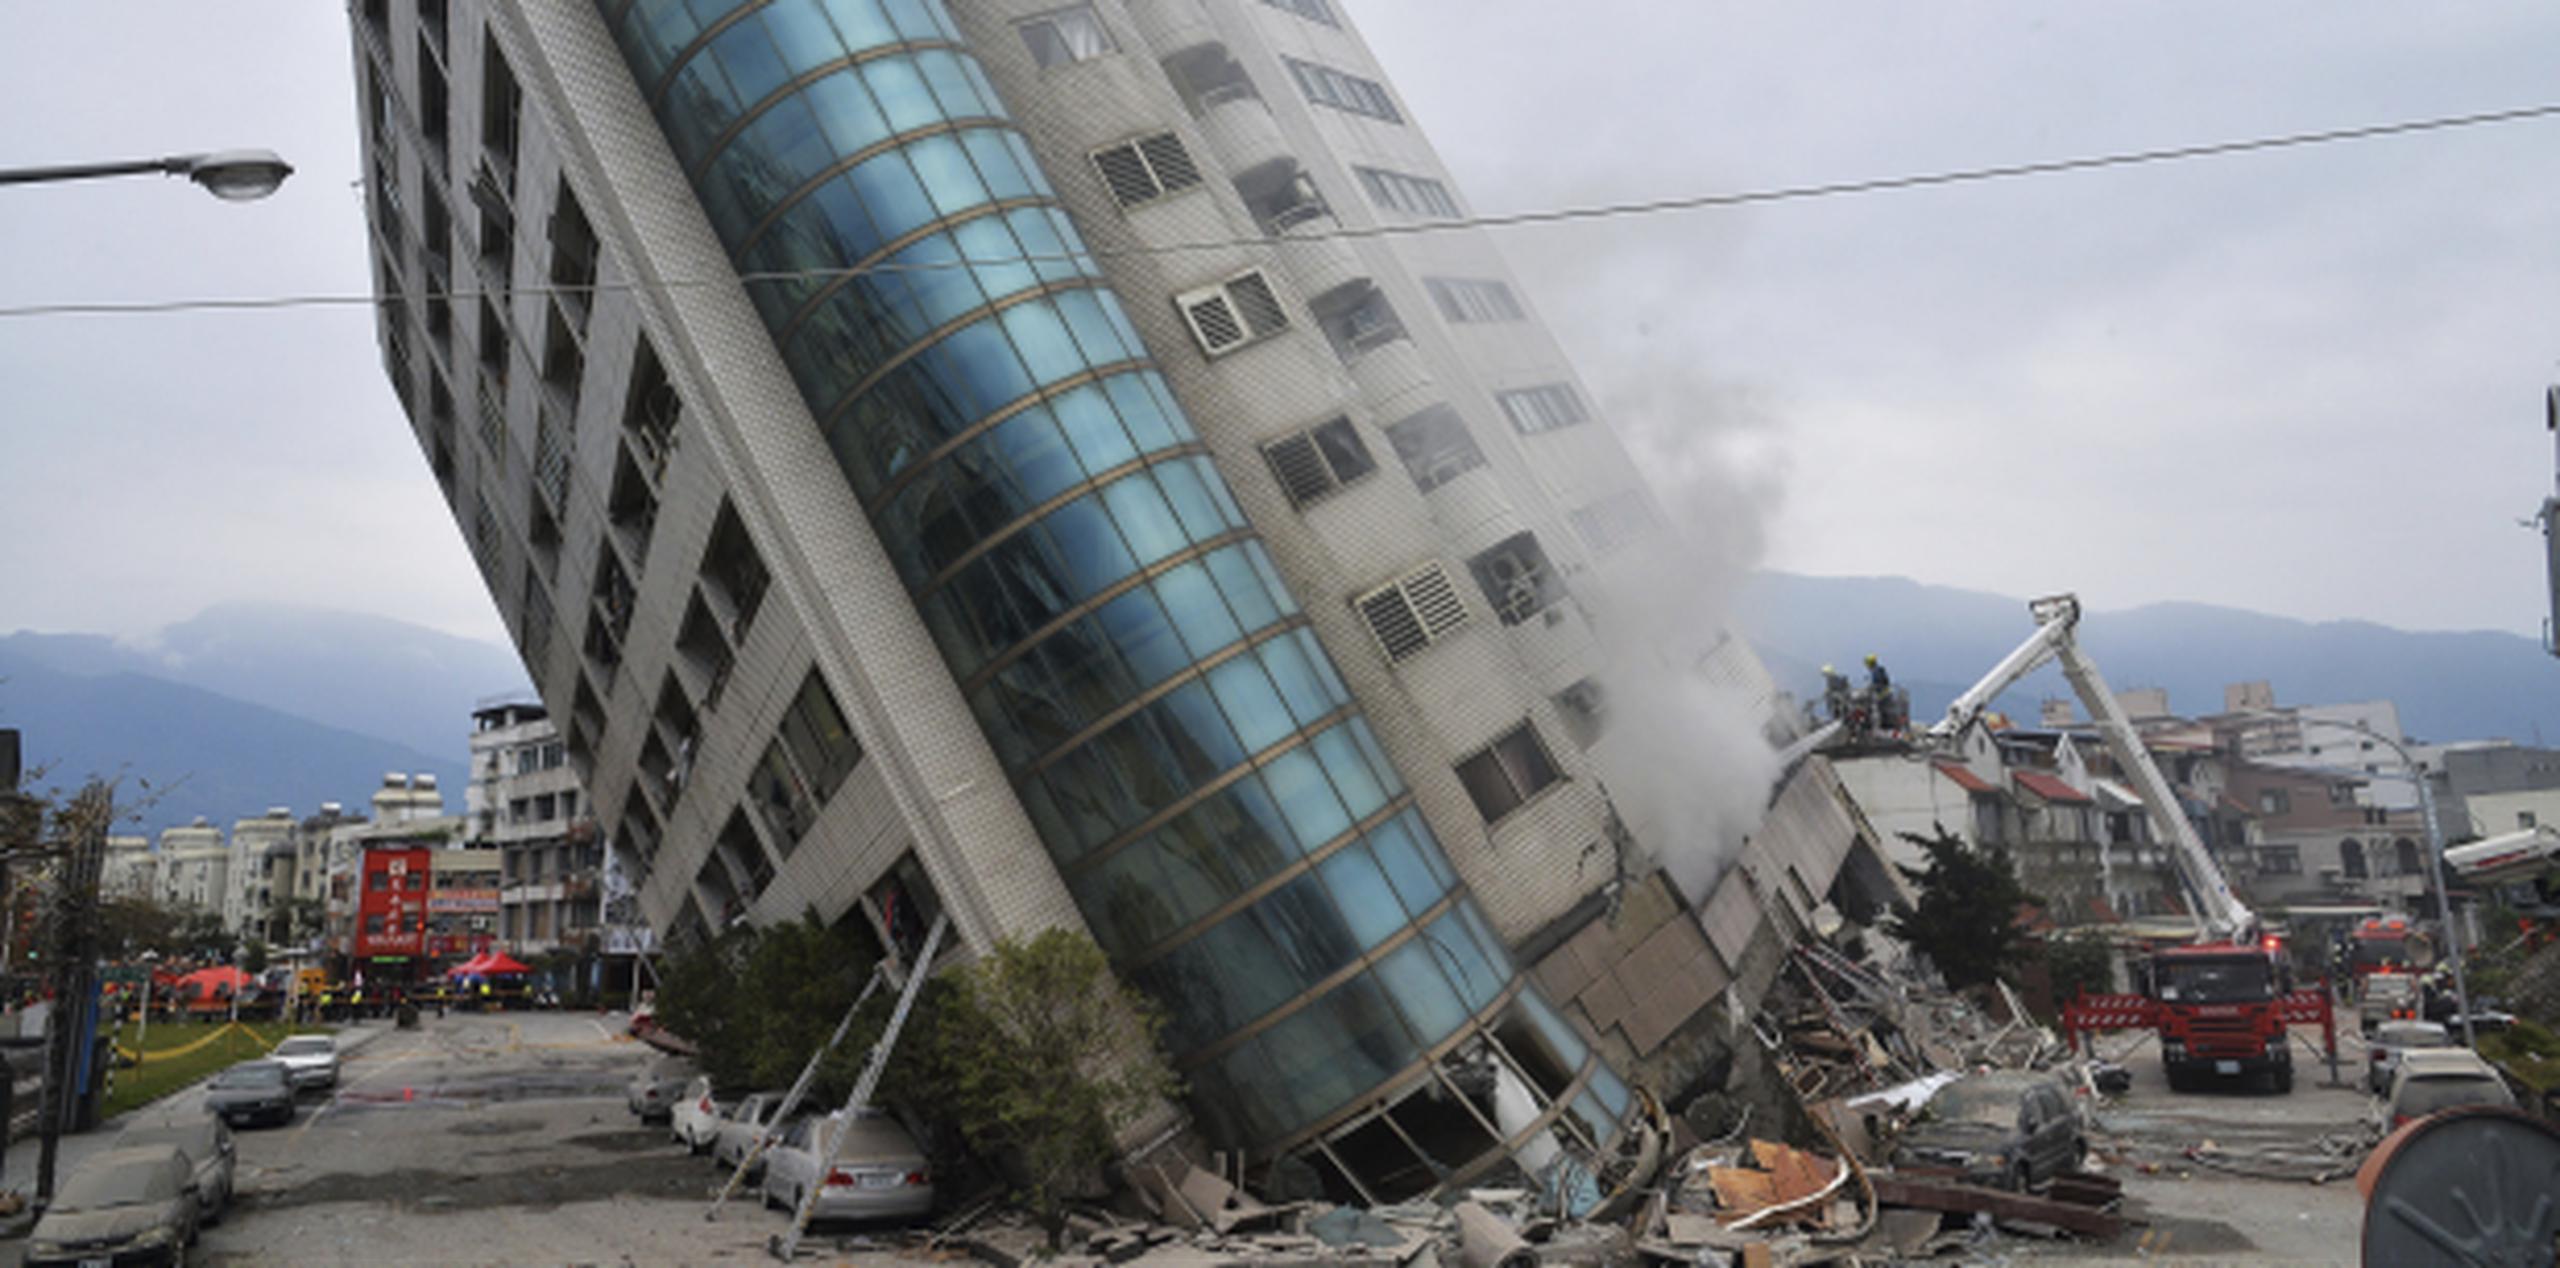 El colapso del complejo residencial y comercial Yun Men Tsui Ti  a principios de mes causó 14 fallecidos. (Archivo)